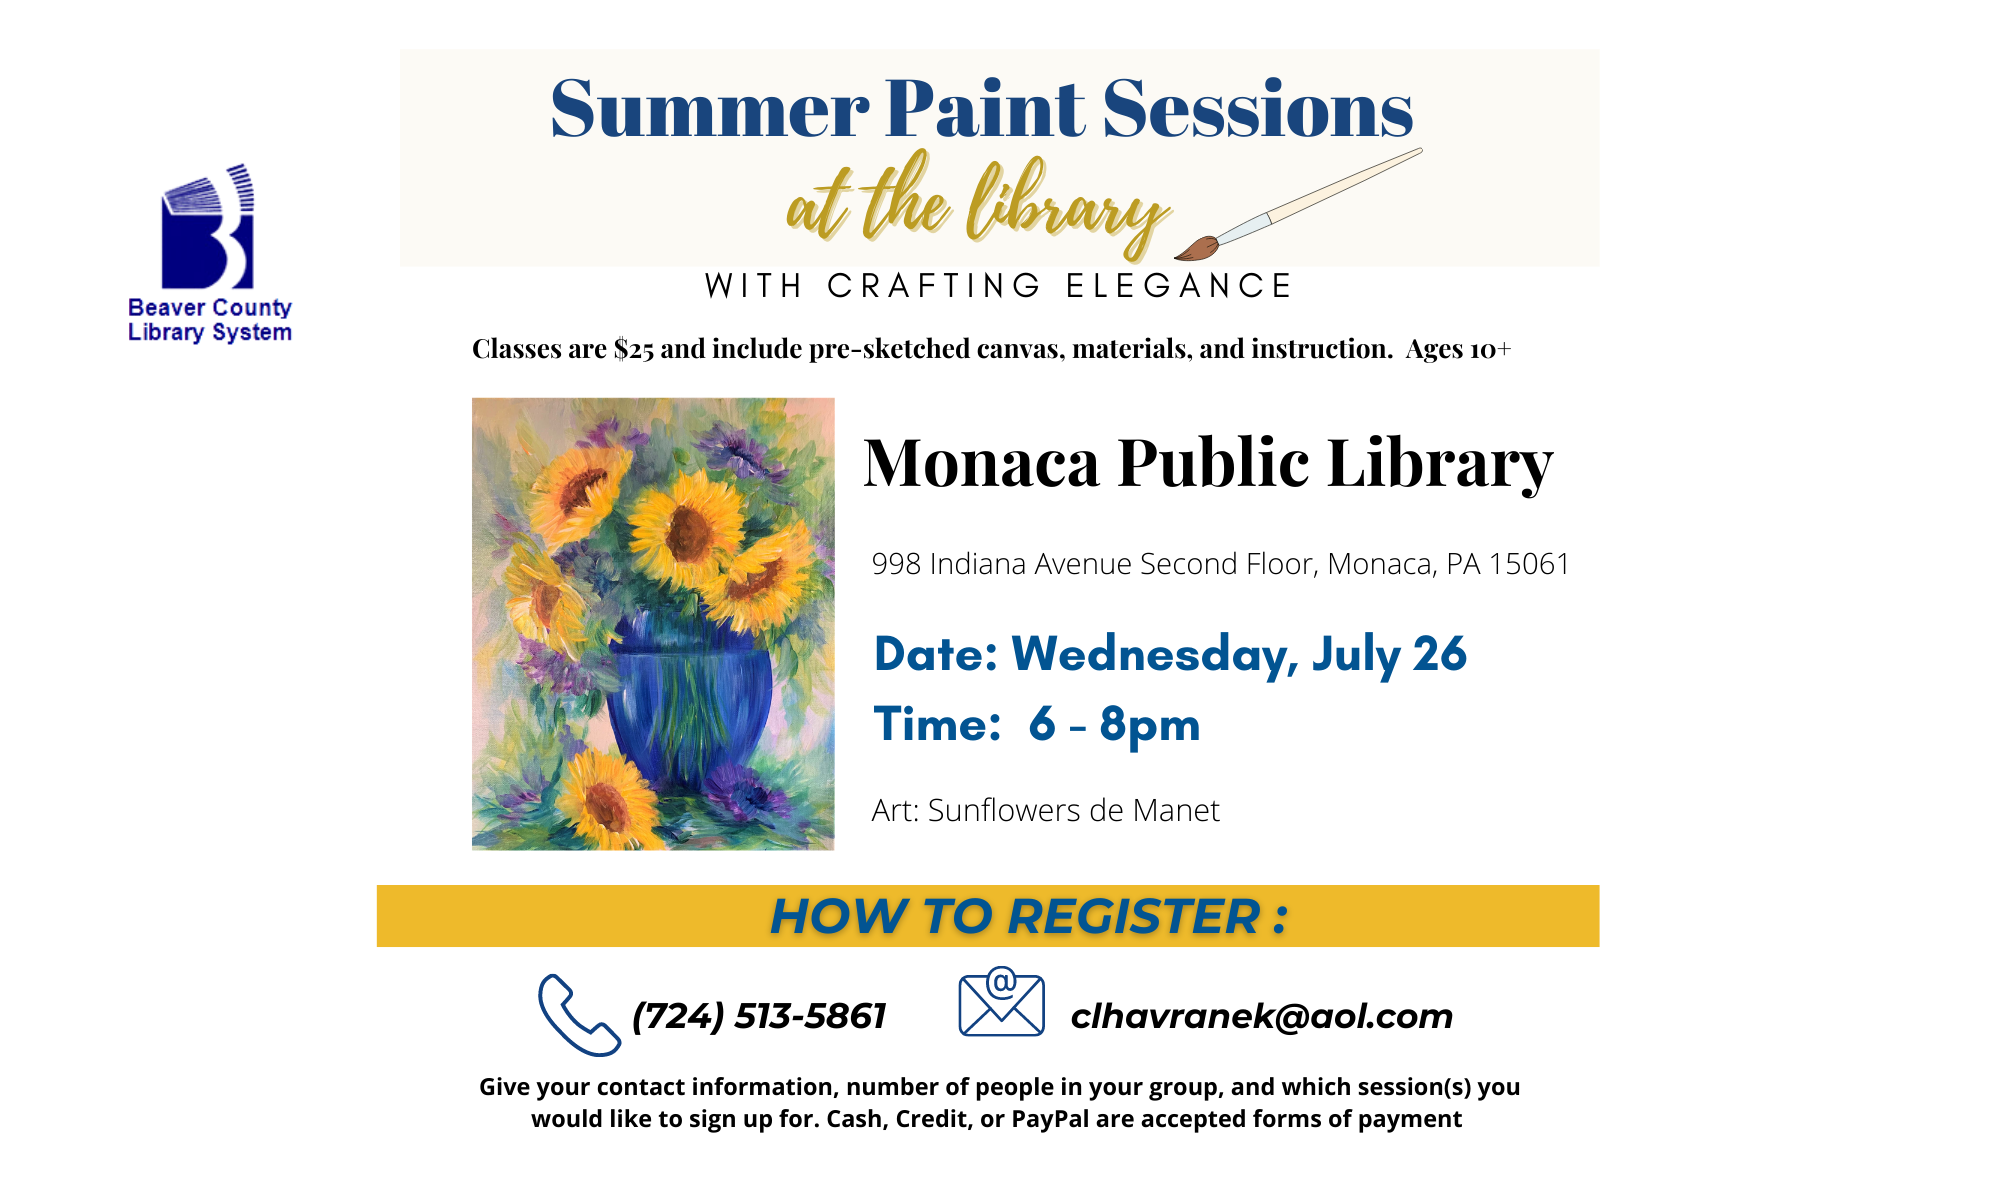 Summer Paint Series: Sunflowers de Manet